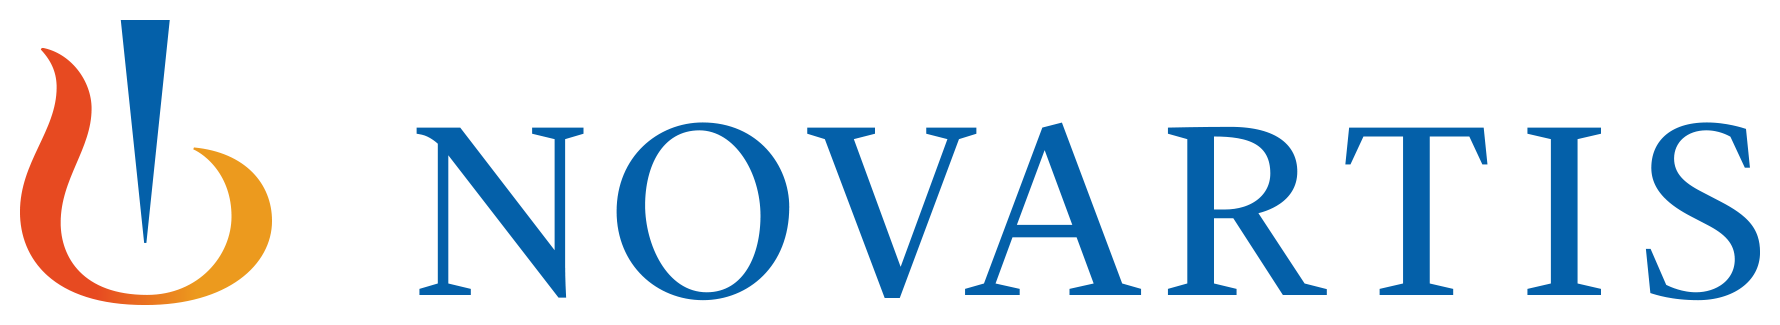 novartis logo_color